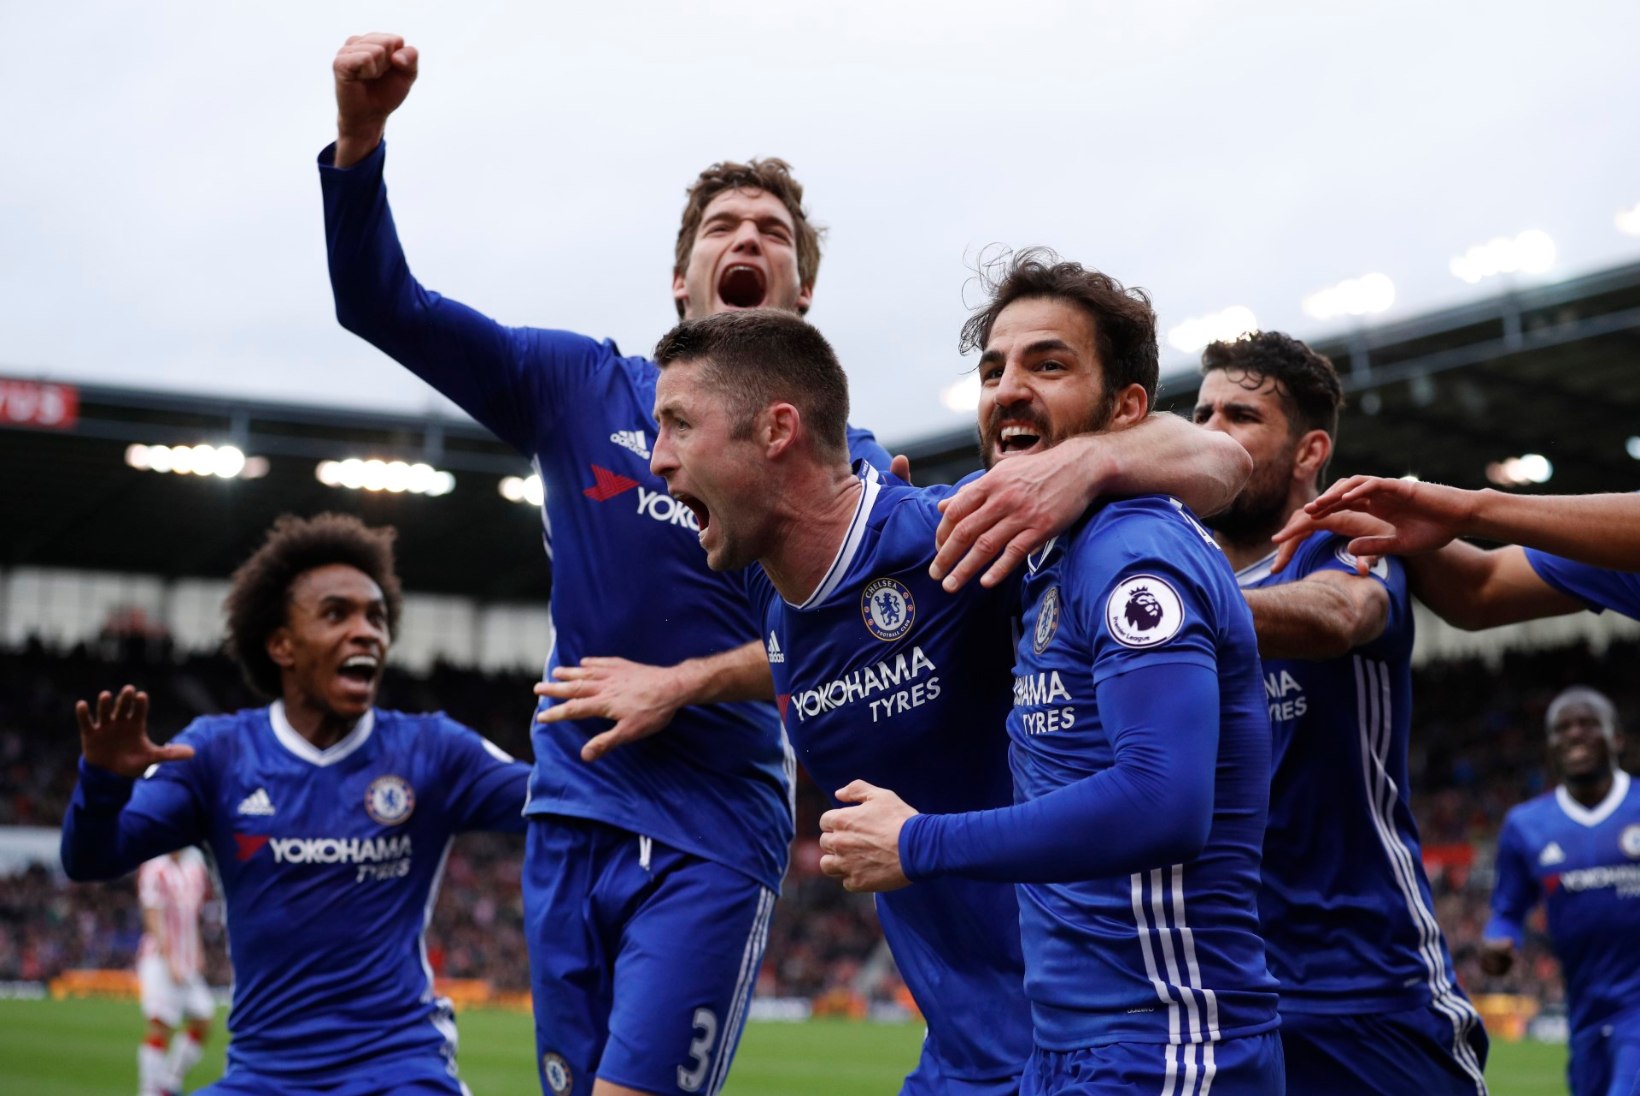 FOTOD | Põnev Premier League: Chelsea näitas tõelist meistriklassi, Leicester seilab võidulainel, Arsenal kaotas jälle